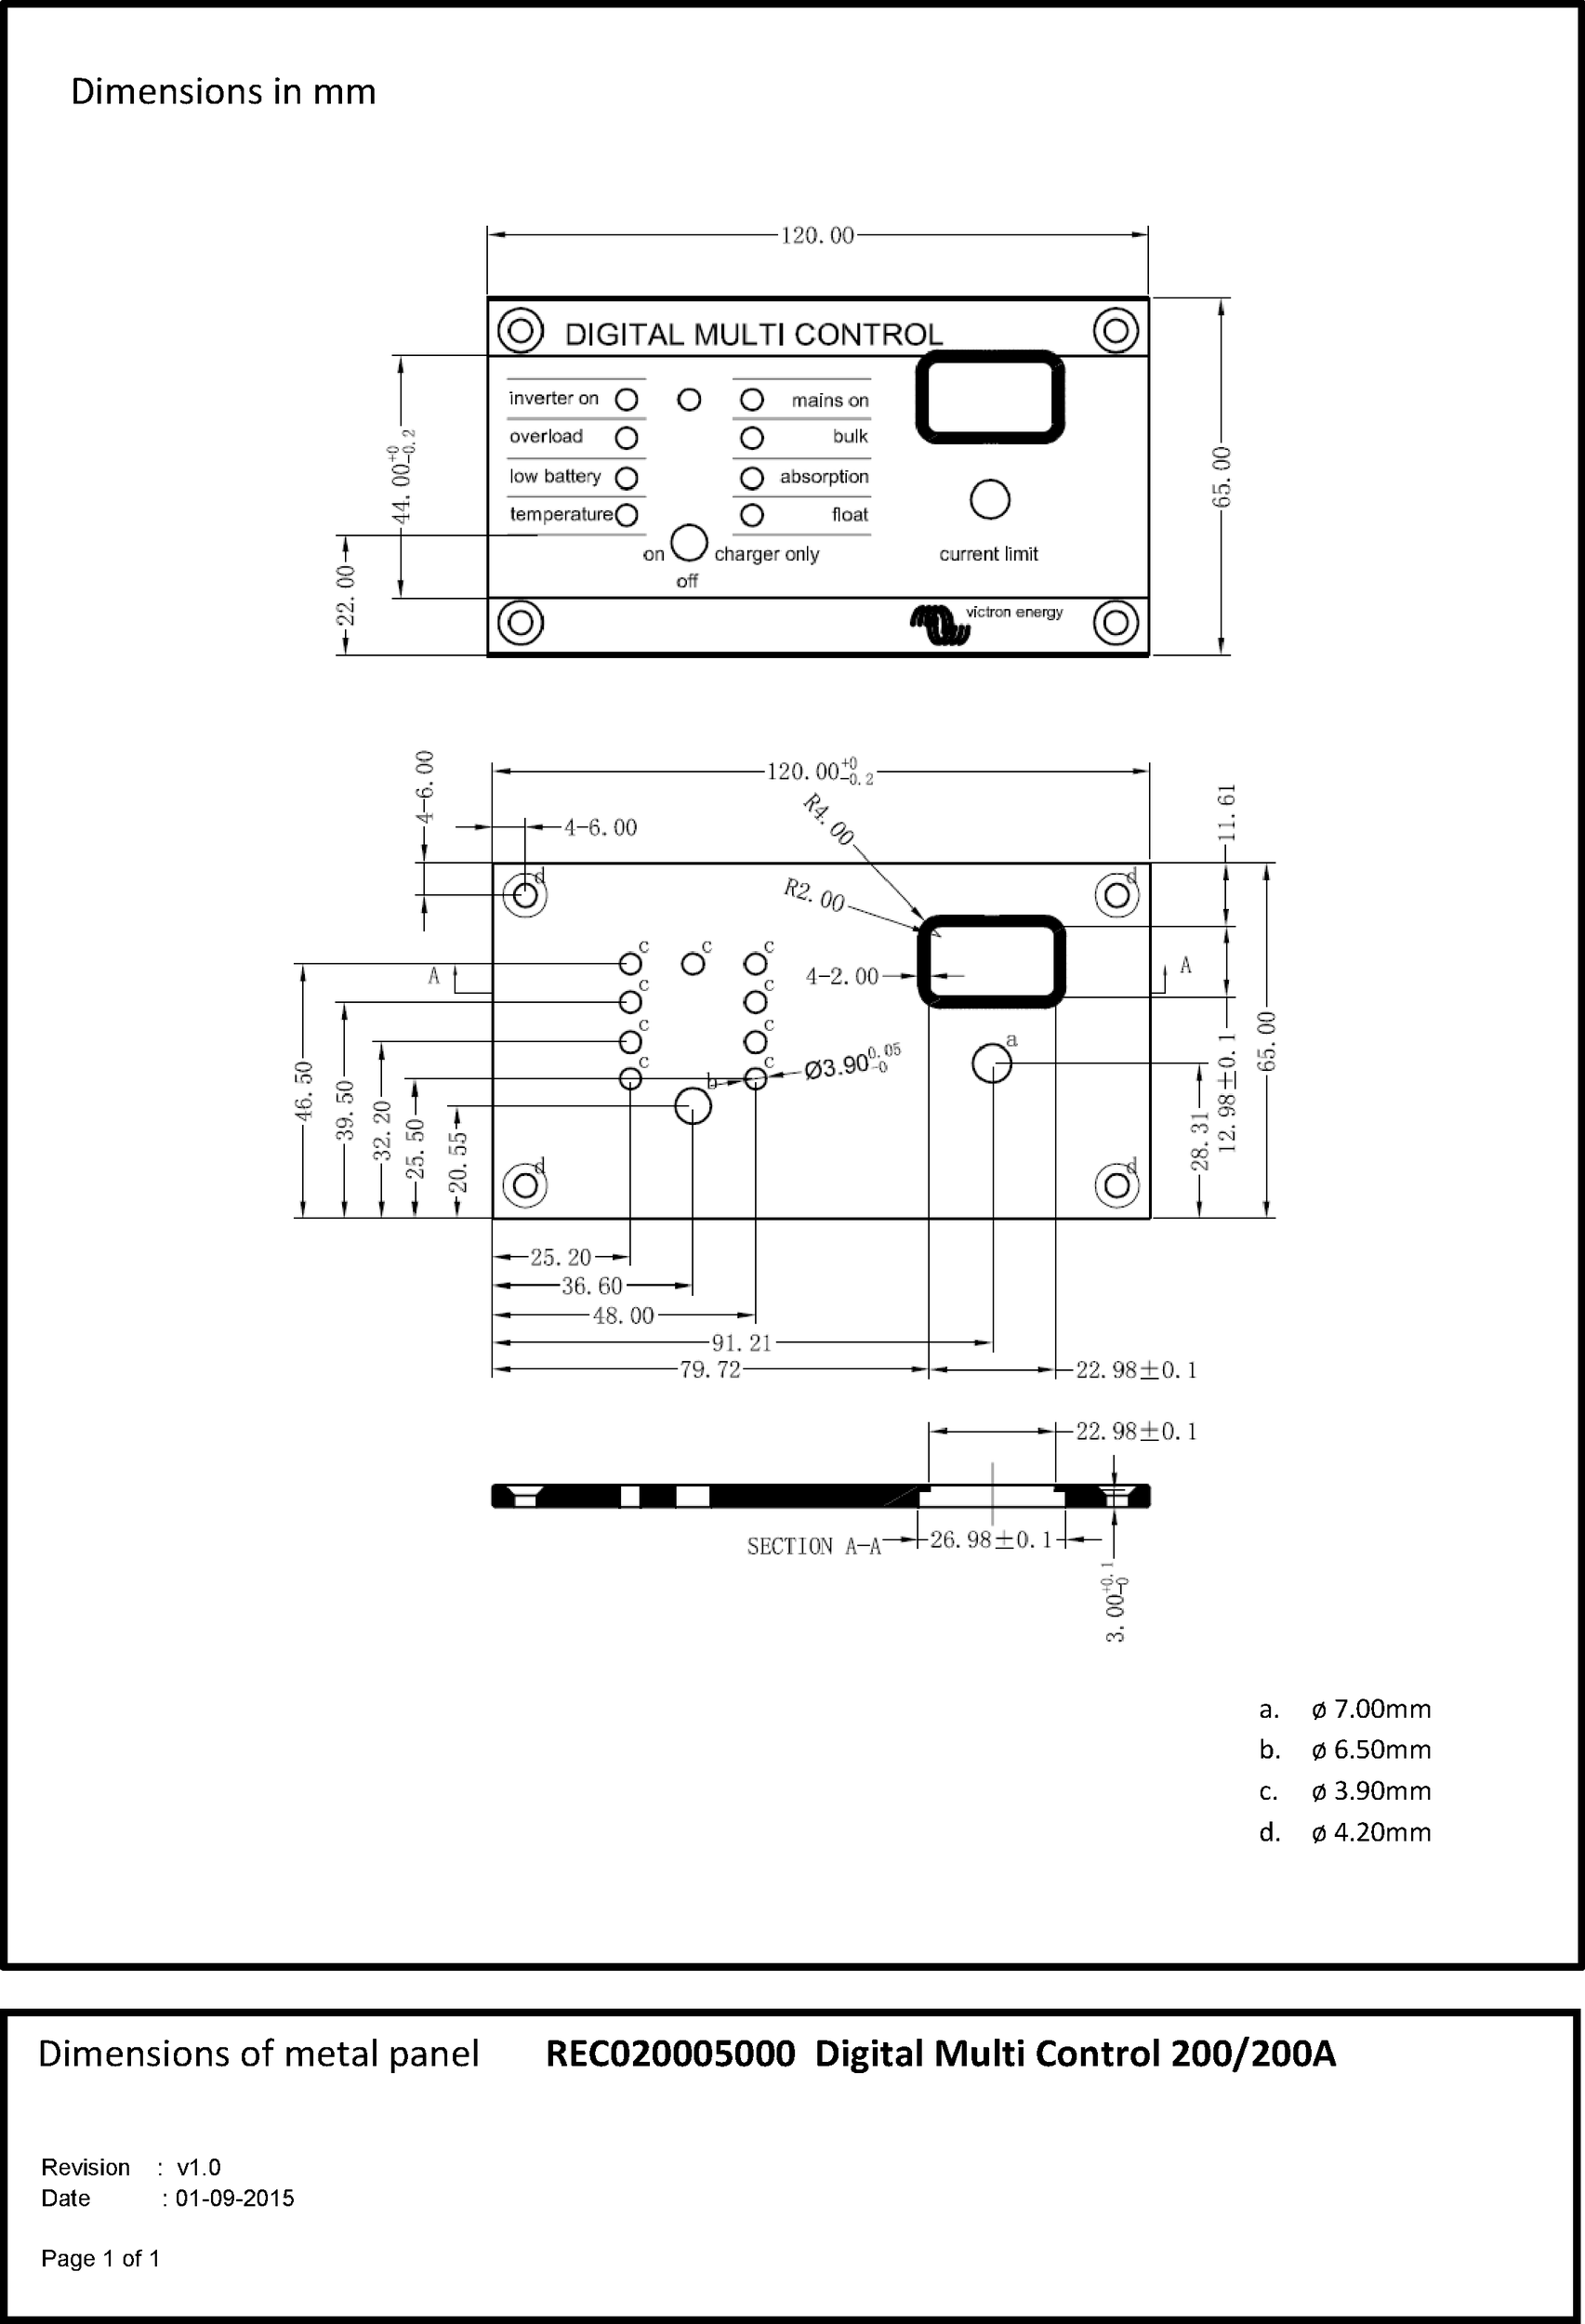 Dimensions-of-metal-panel-for-REC020005000-Digital-Multi-Control-200-200___.pdf